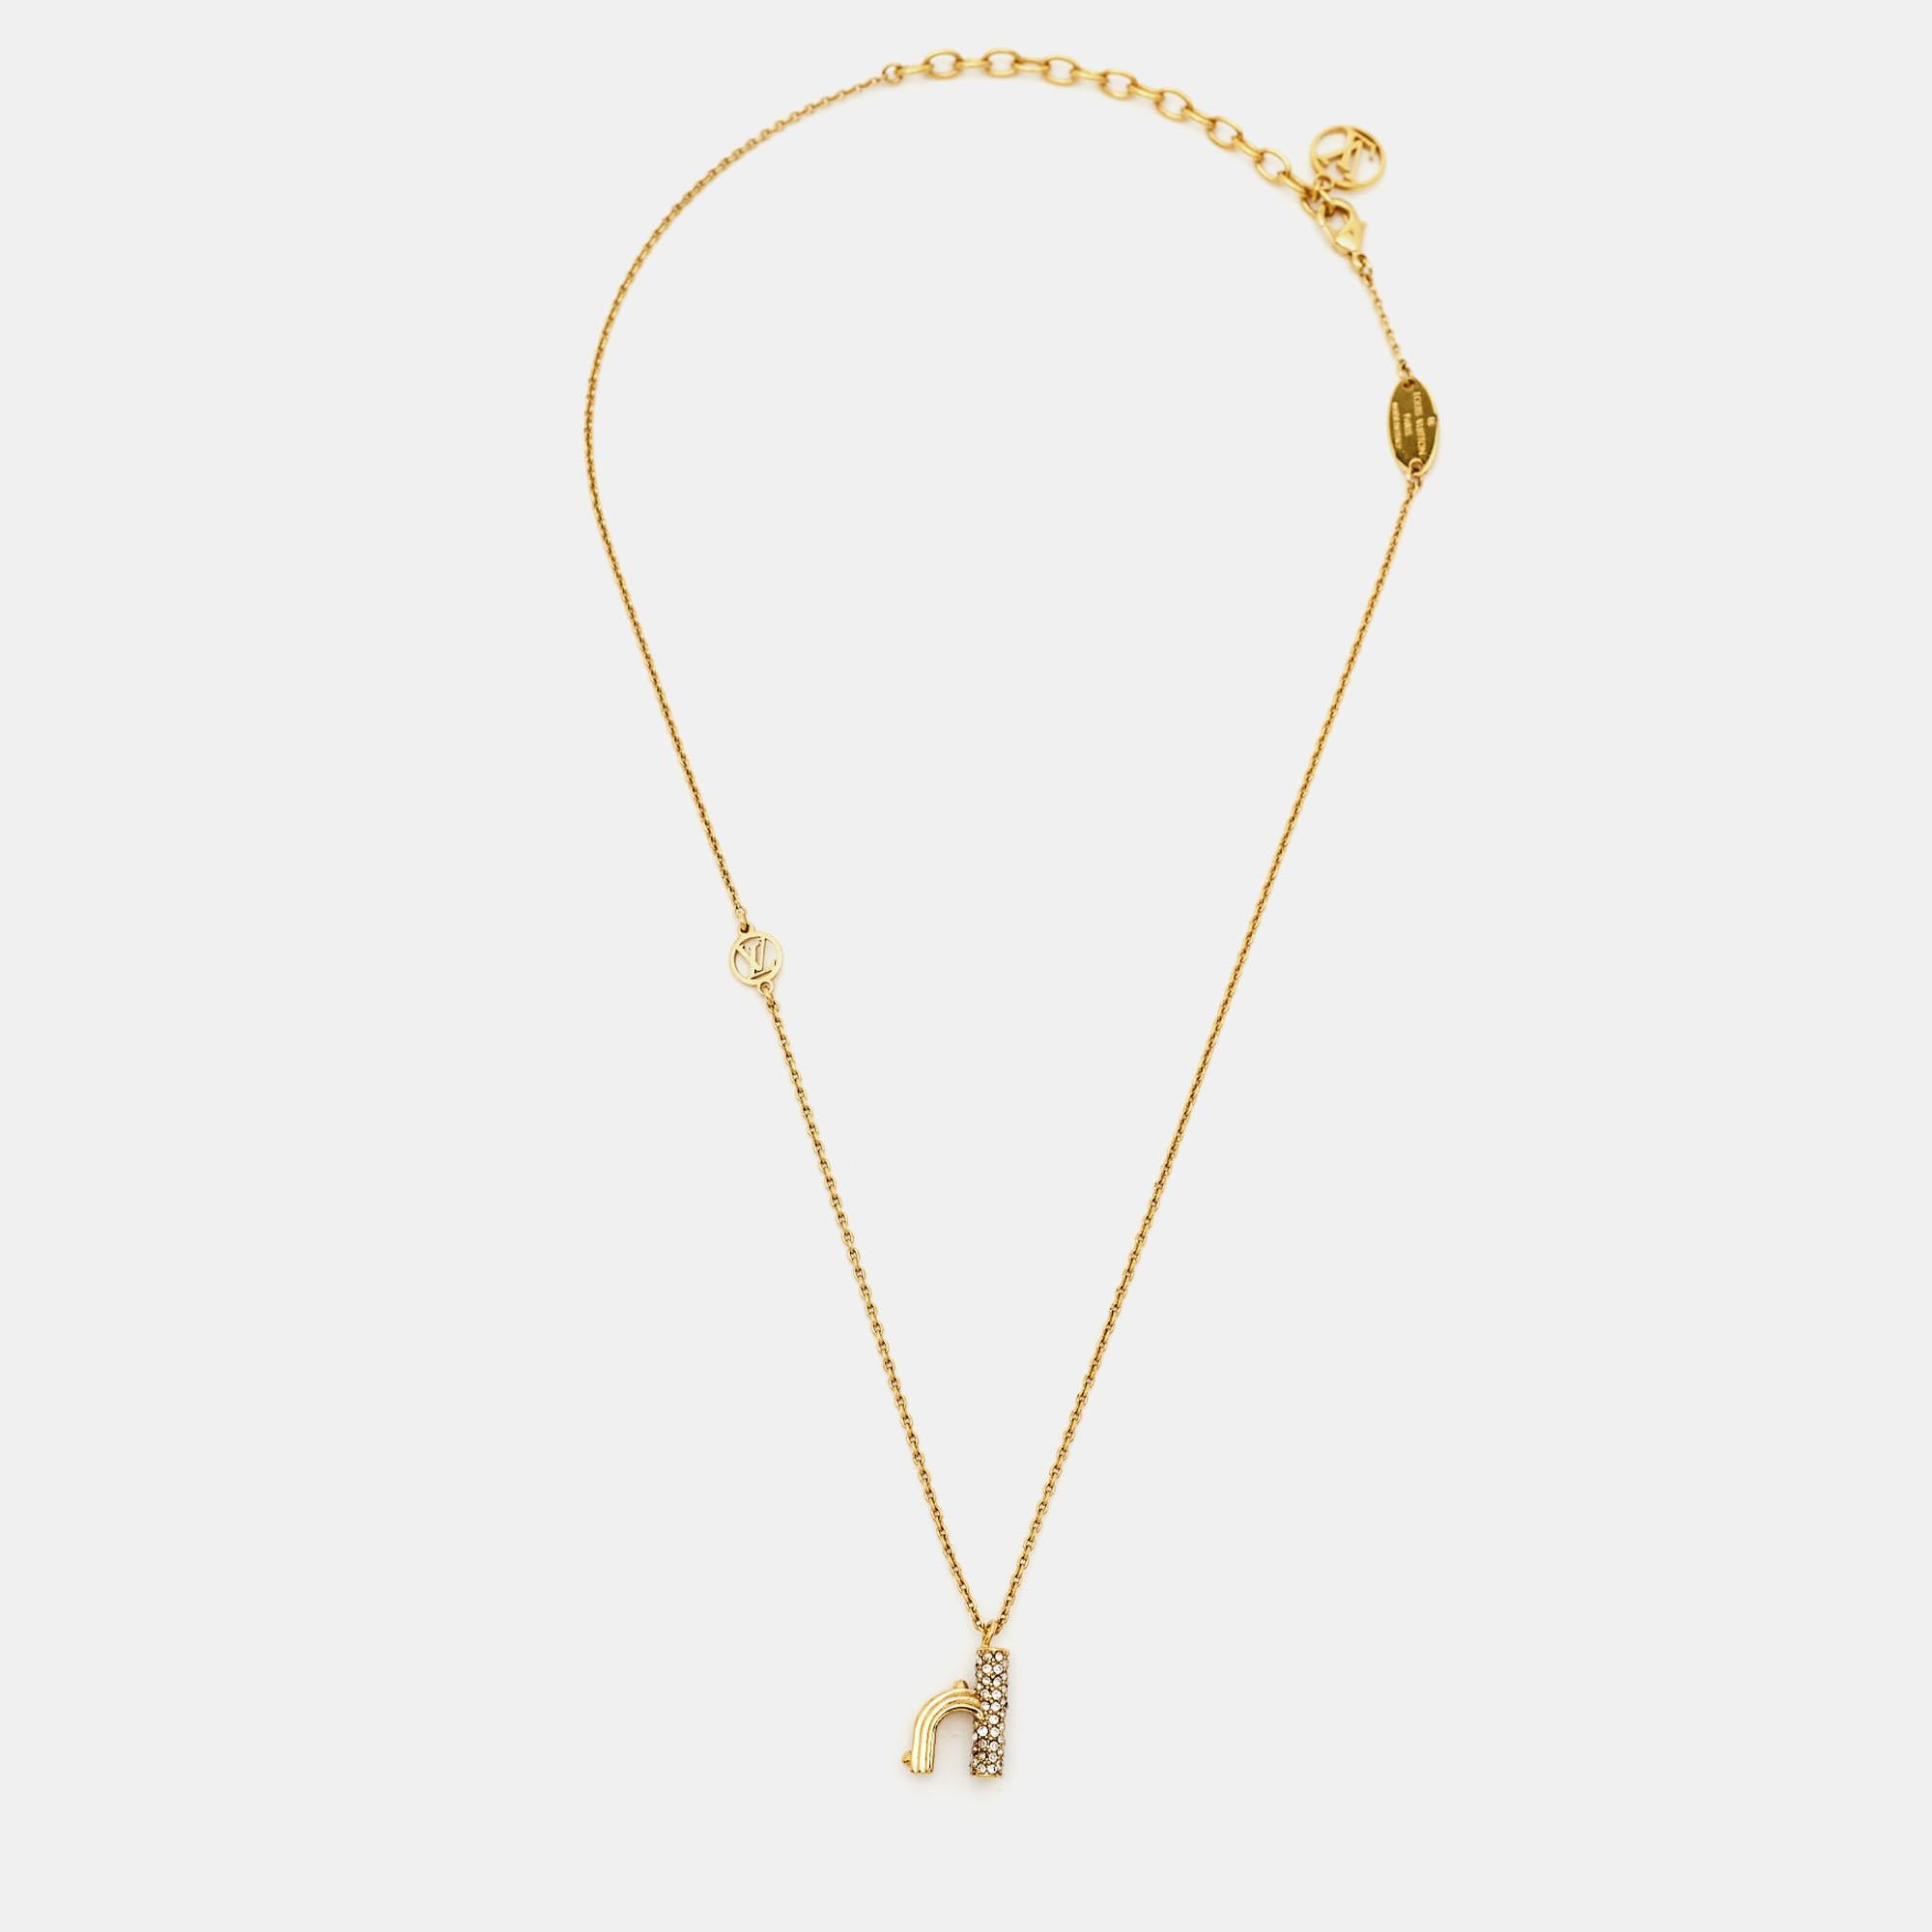 Le collier LV & Me de Louis Vuitton est un accessoire de mode luxueux. Il se compose d'une chaîne en métal doré ornée de cristaux étincelants et d'un pendentif en forme de lettre 